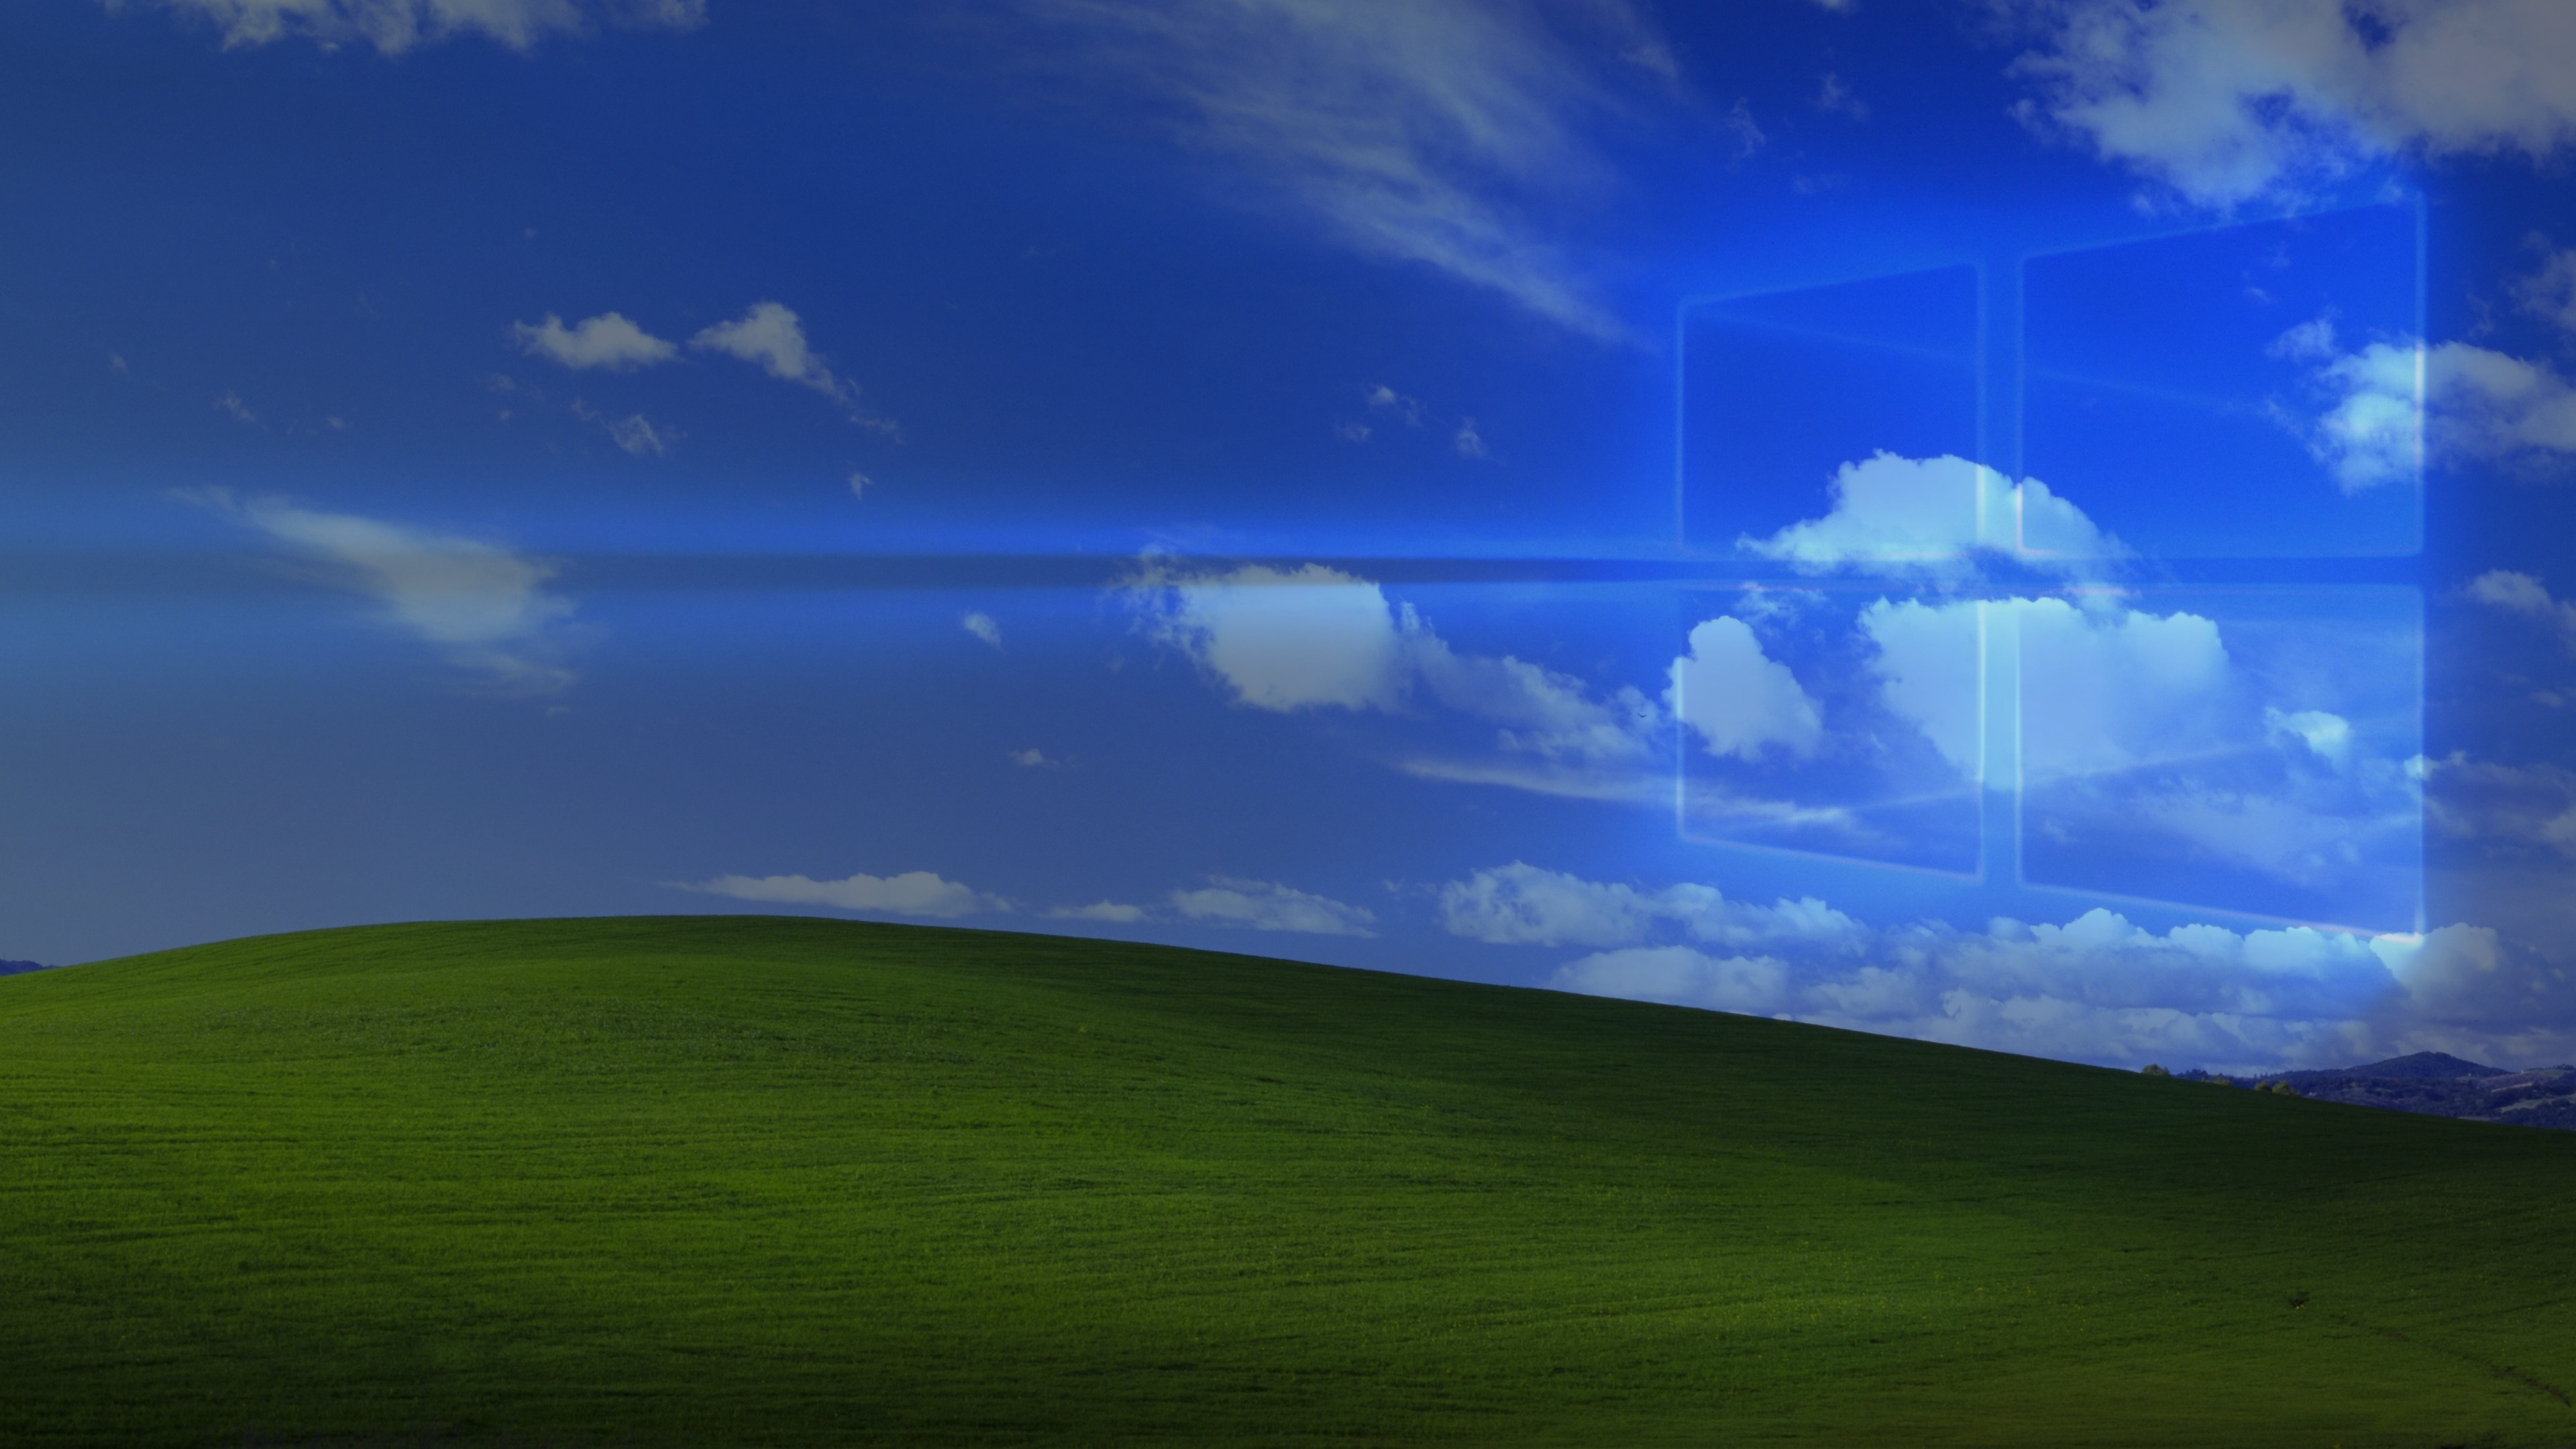 Thưởng thức hình nền Windows XP 10 tuyệt đẹp đầy màu sắc và sinh động, giúp bạn tận hưởng sự thăng hoa của công nghệ mới nhất. Những hình ảnh ấn tượng này sẽ chắc chắn làm bạn phấn khích và đưa bạn trở về thời điểm đỉnh cao của hệ điều hành Windows XP.